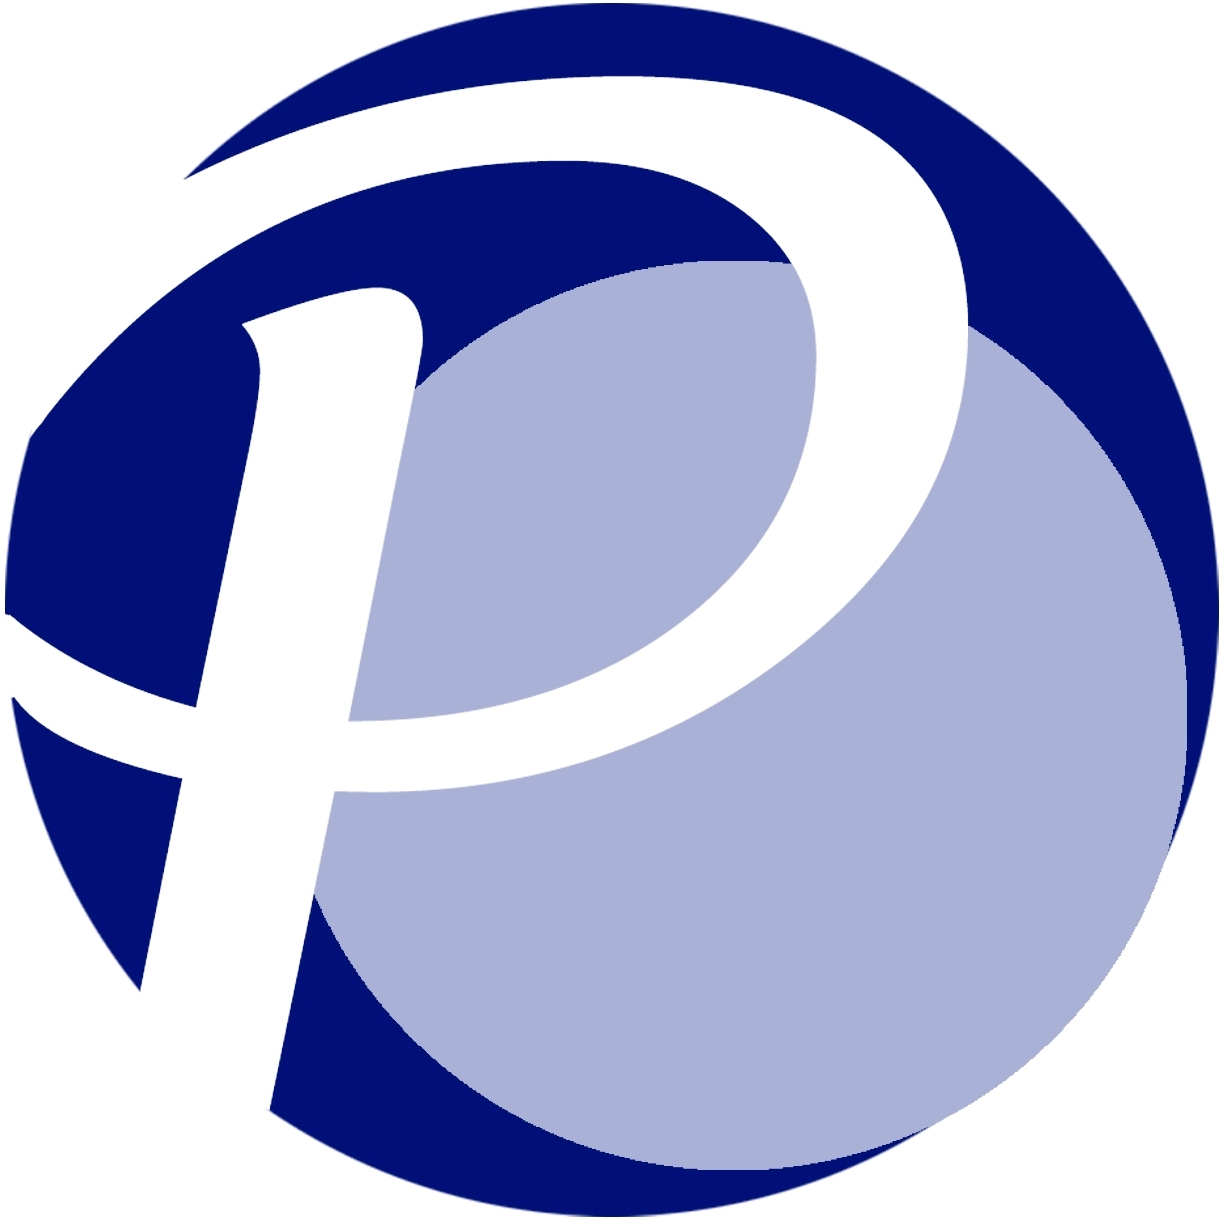 Logo P